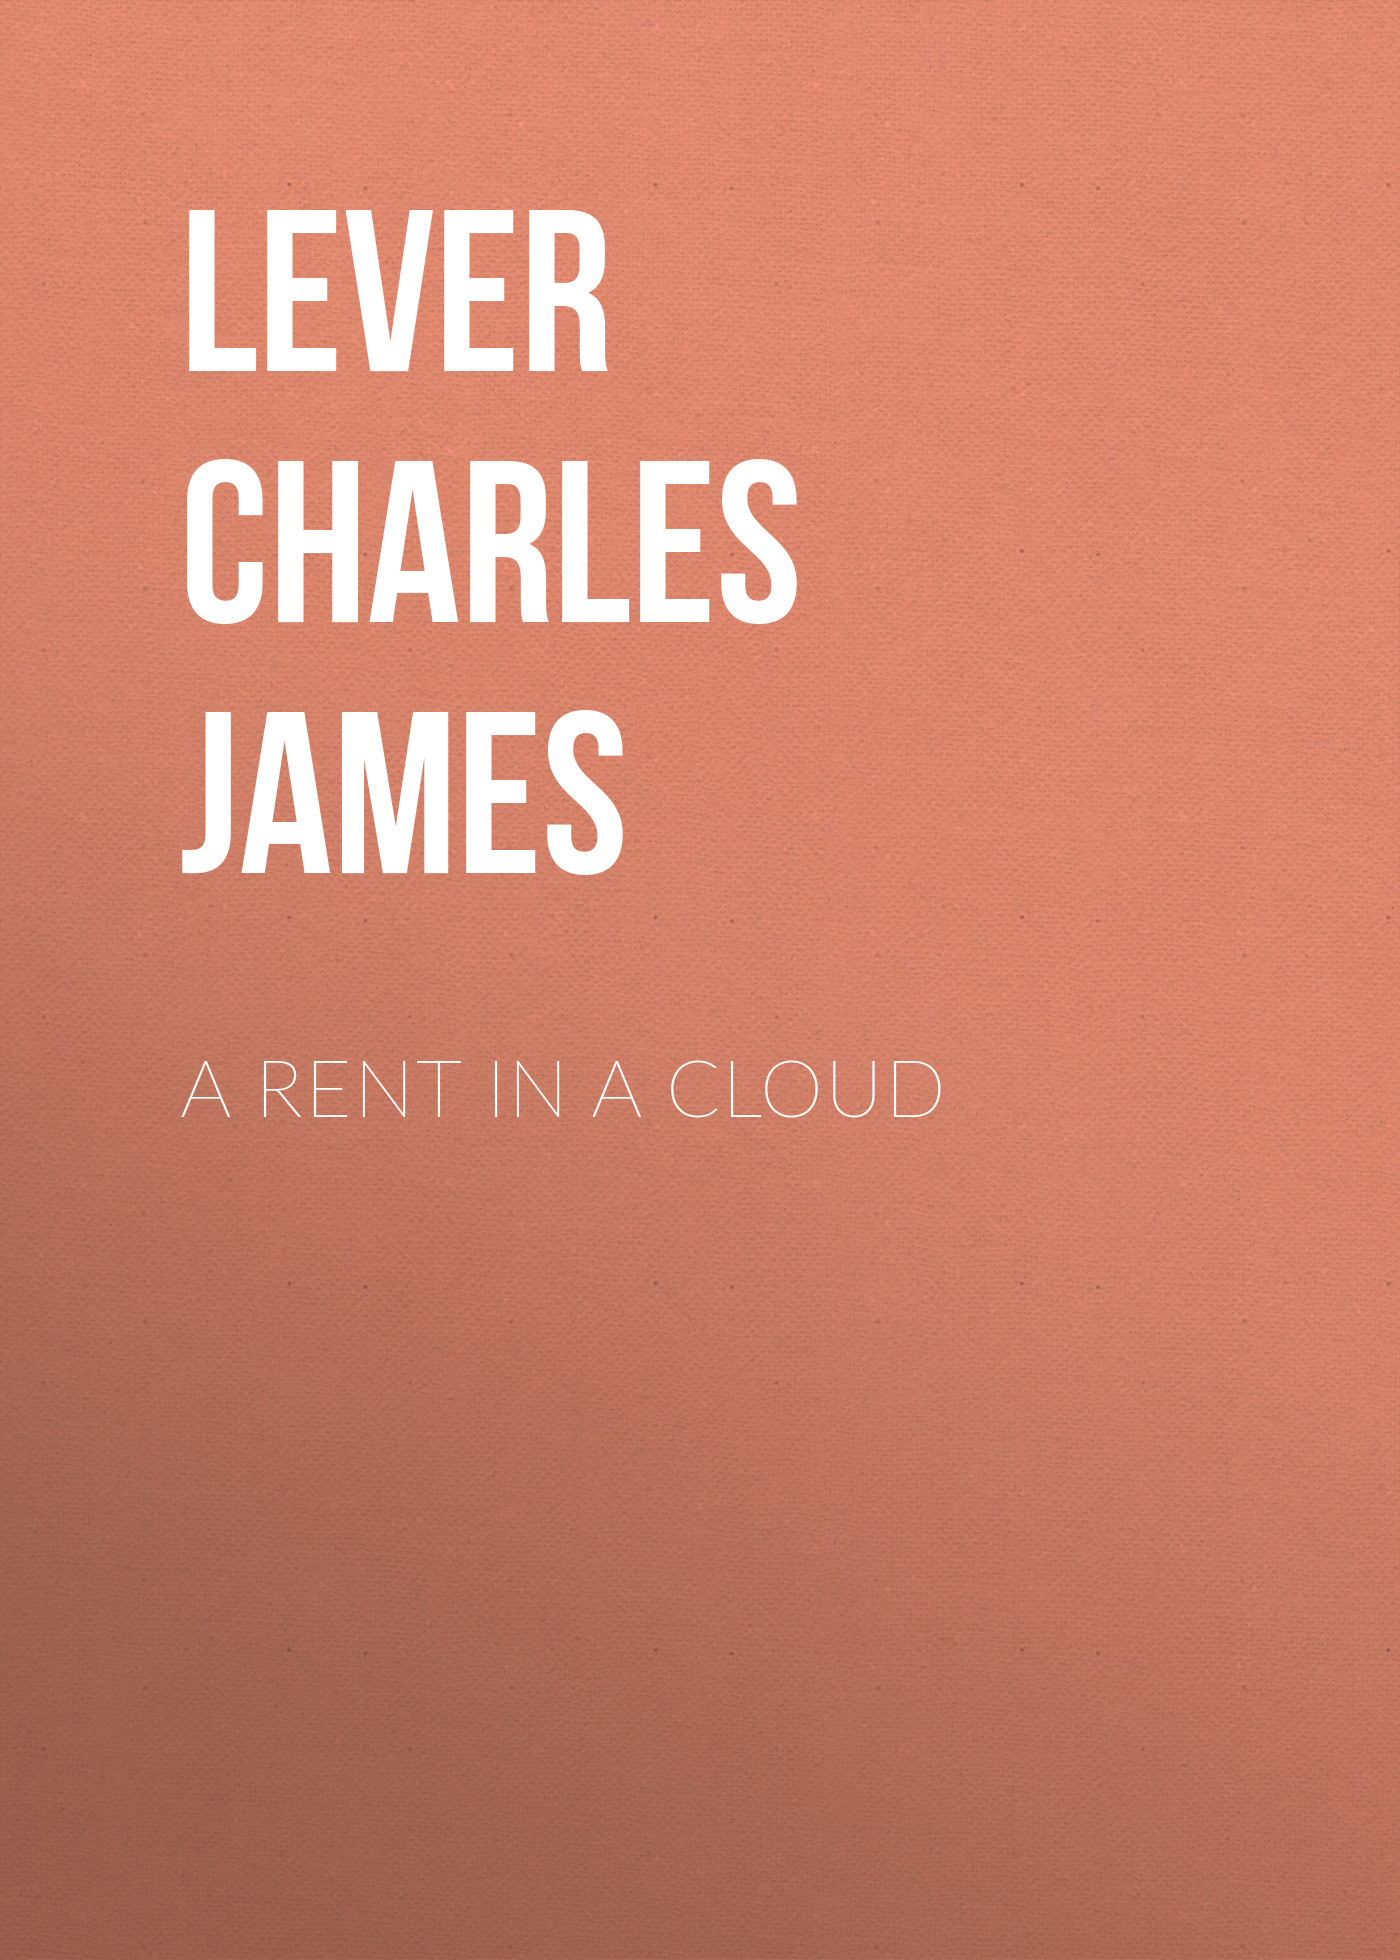 Книга A Rent In A Cloud из серии , созданная Charles Lever, может относится к жанру Литература 19 века, Зарубежная старинная литература, Зарубежная классика. Стоимость электронной книги A Rent In A Cloud с идентификатором 25450108 составляет 0 руб.